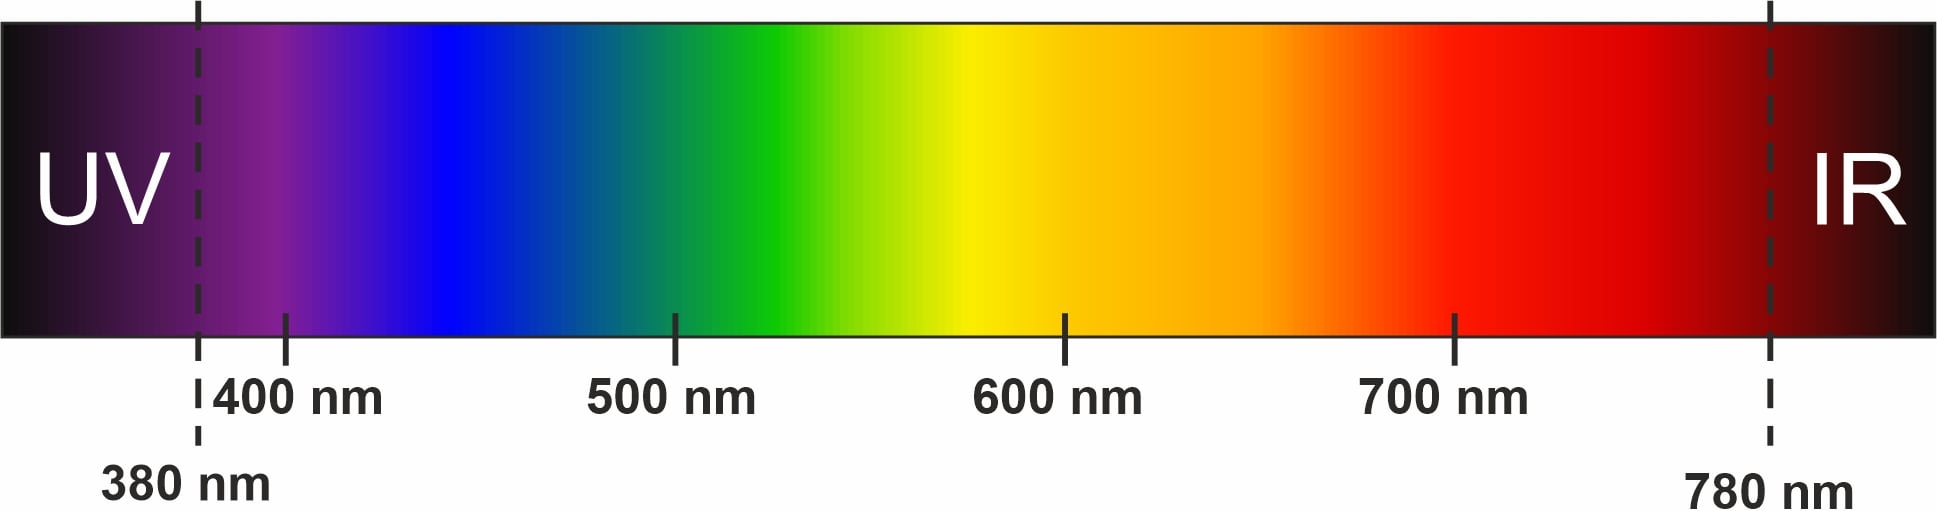 Spektrum des sichtbaren Lichtes